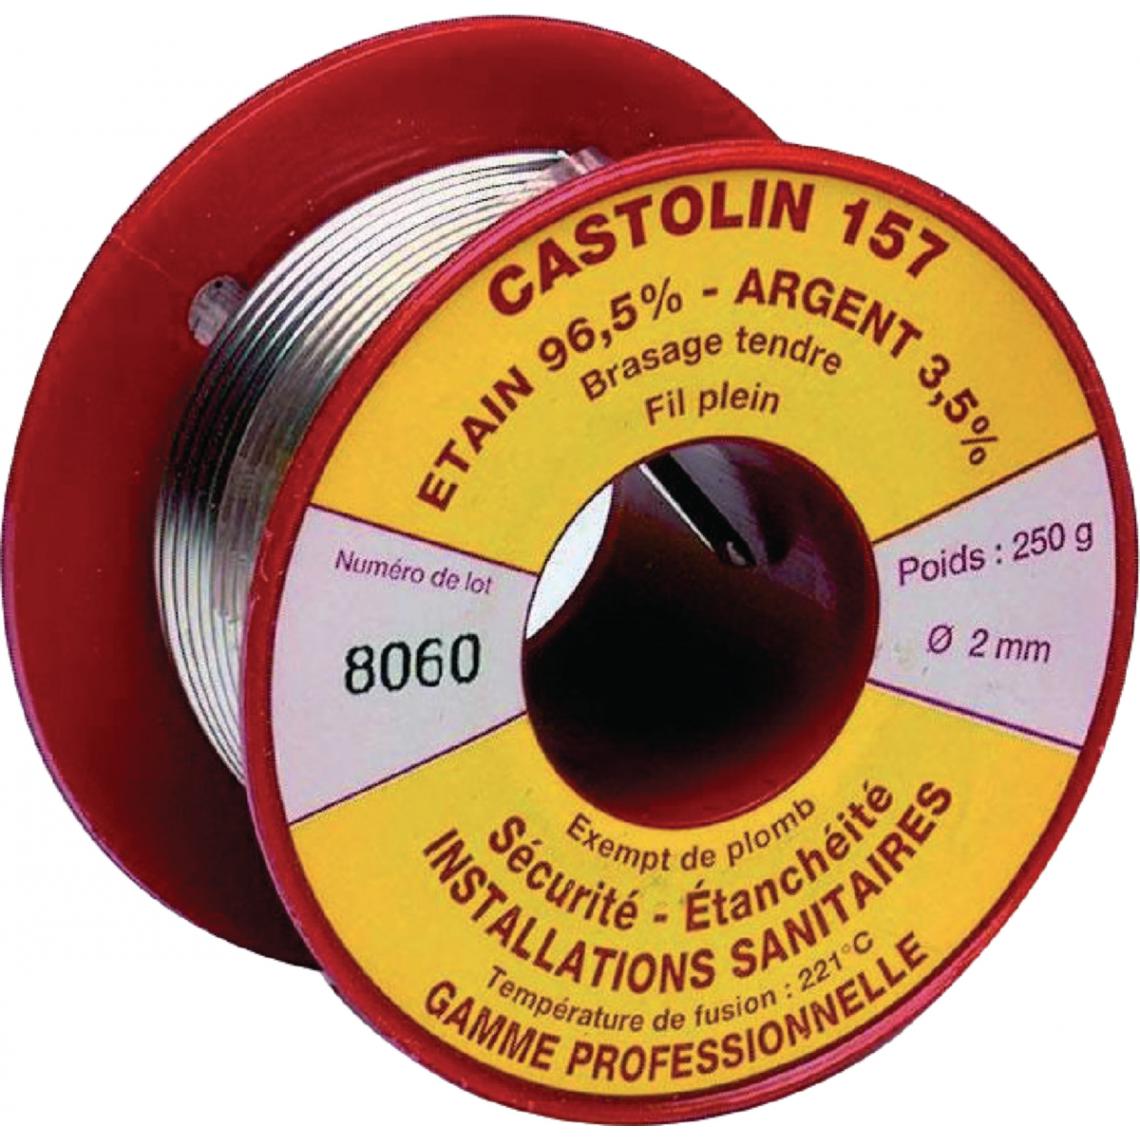 Castolin - bobine de fil - 157 - brasage tendre - etain/argent 3,5% - sans plomb gaz - 250g - castolin 157gaz2002p - Accessoires de soudure